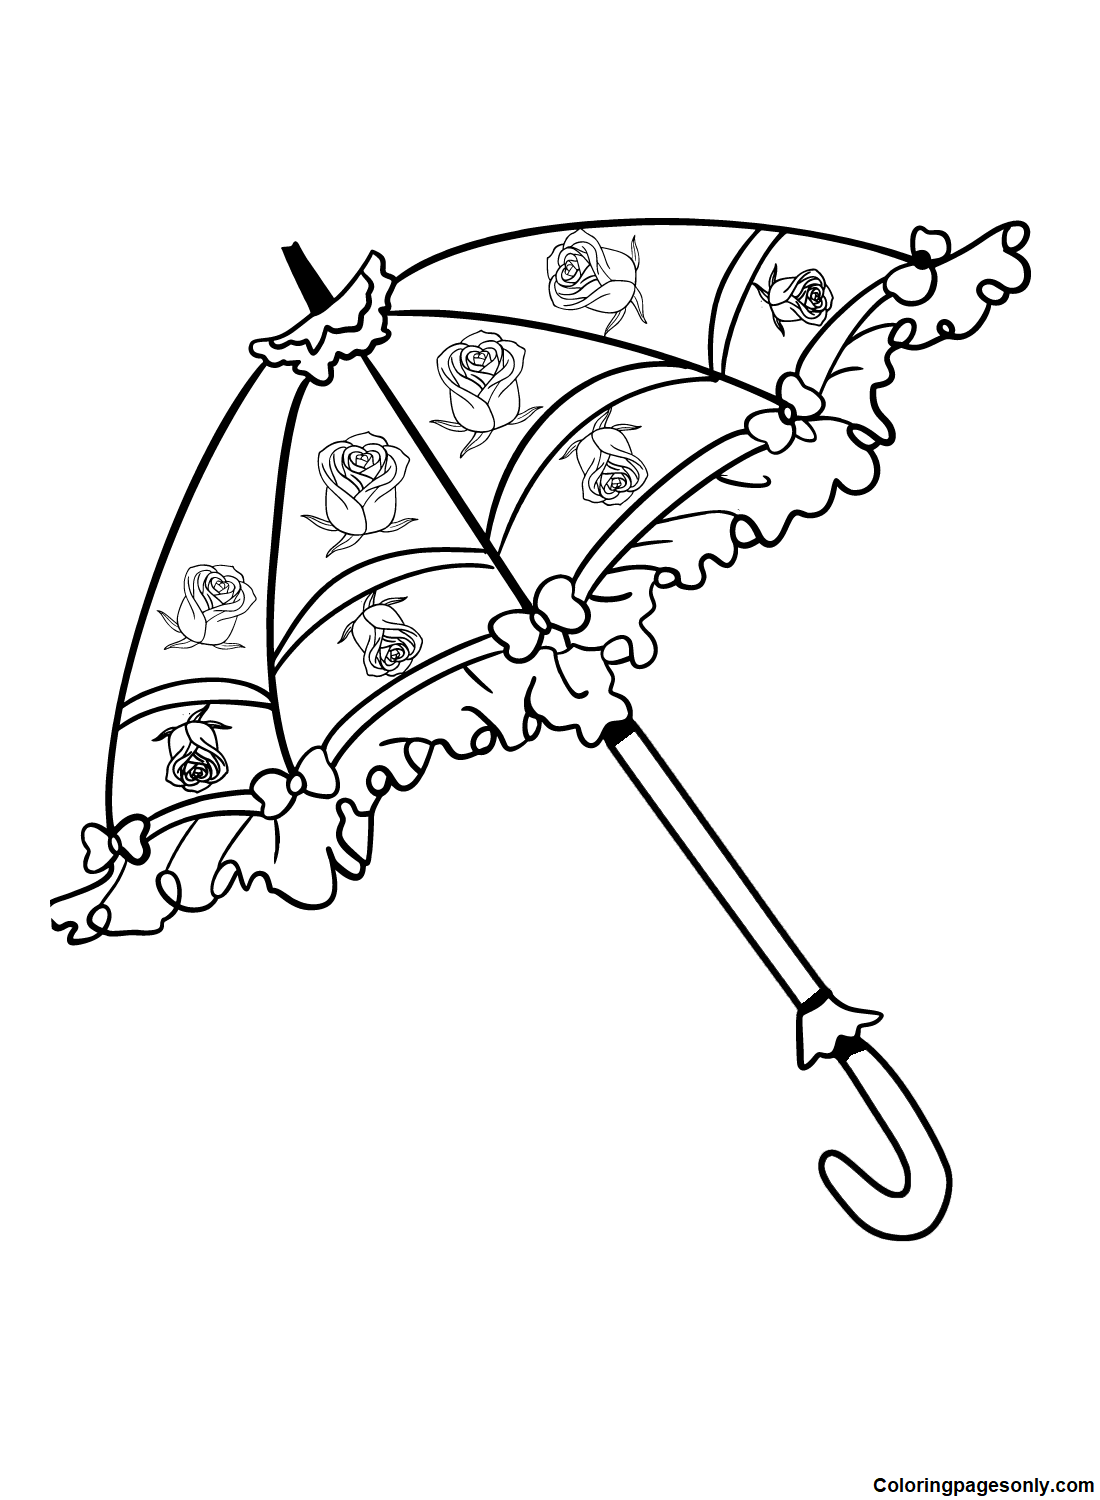 Lindo guarda-chuva from Umbrella